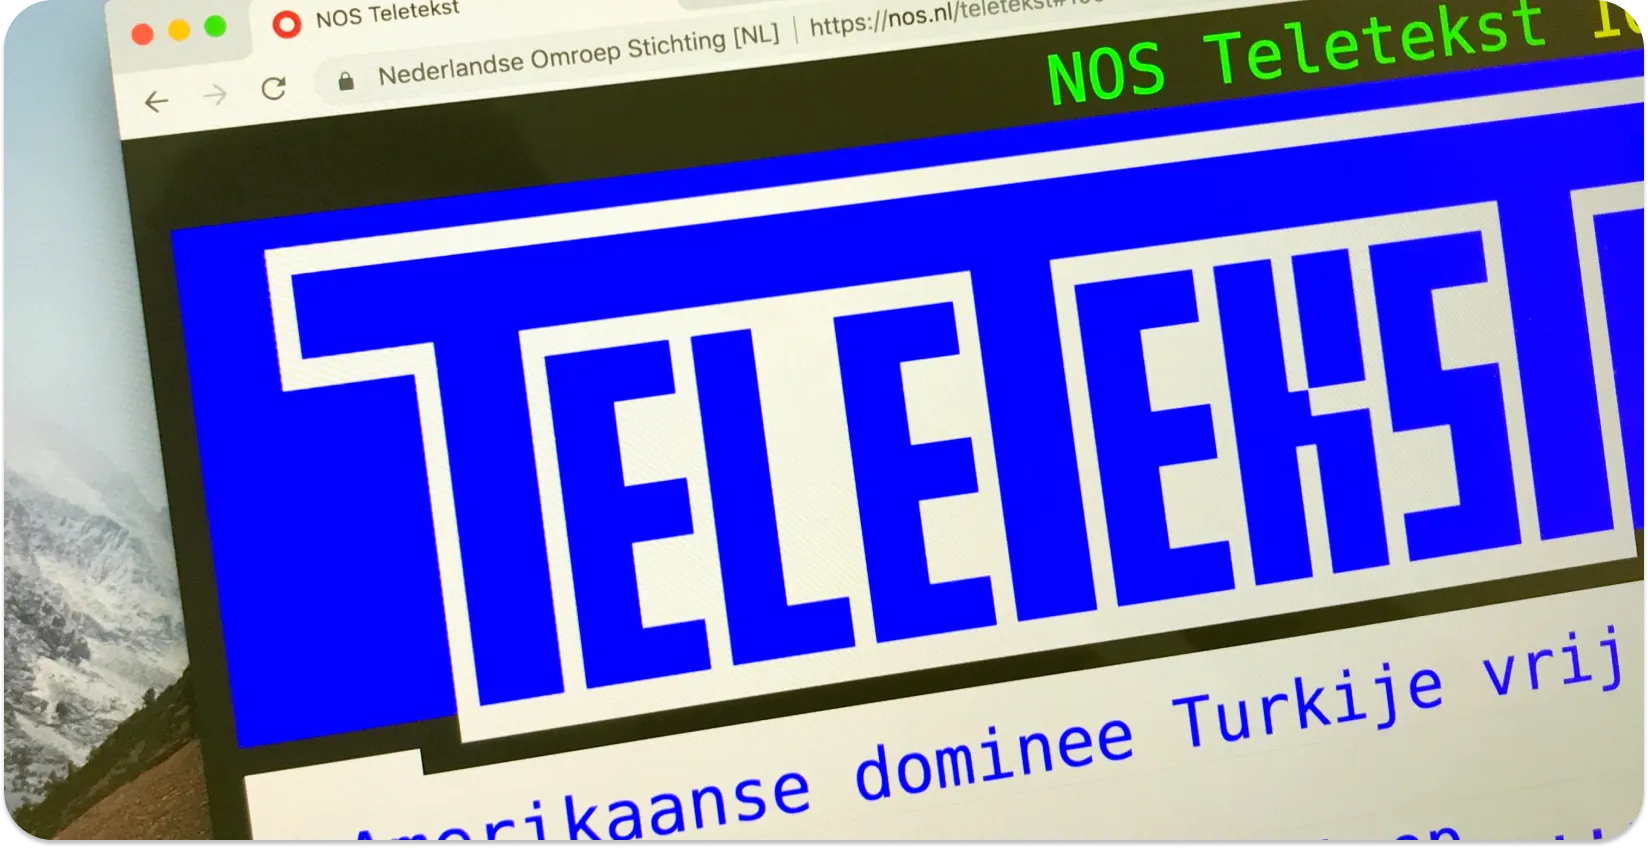 Uma tela de computador exibindo legendas de teletexto com manchetes de notícias, exemplificando o formato de legenda de teletexto.